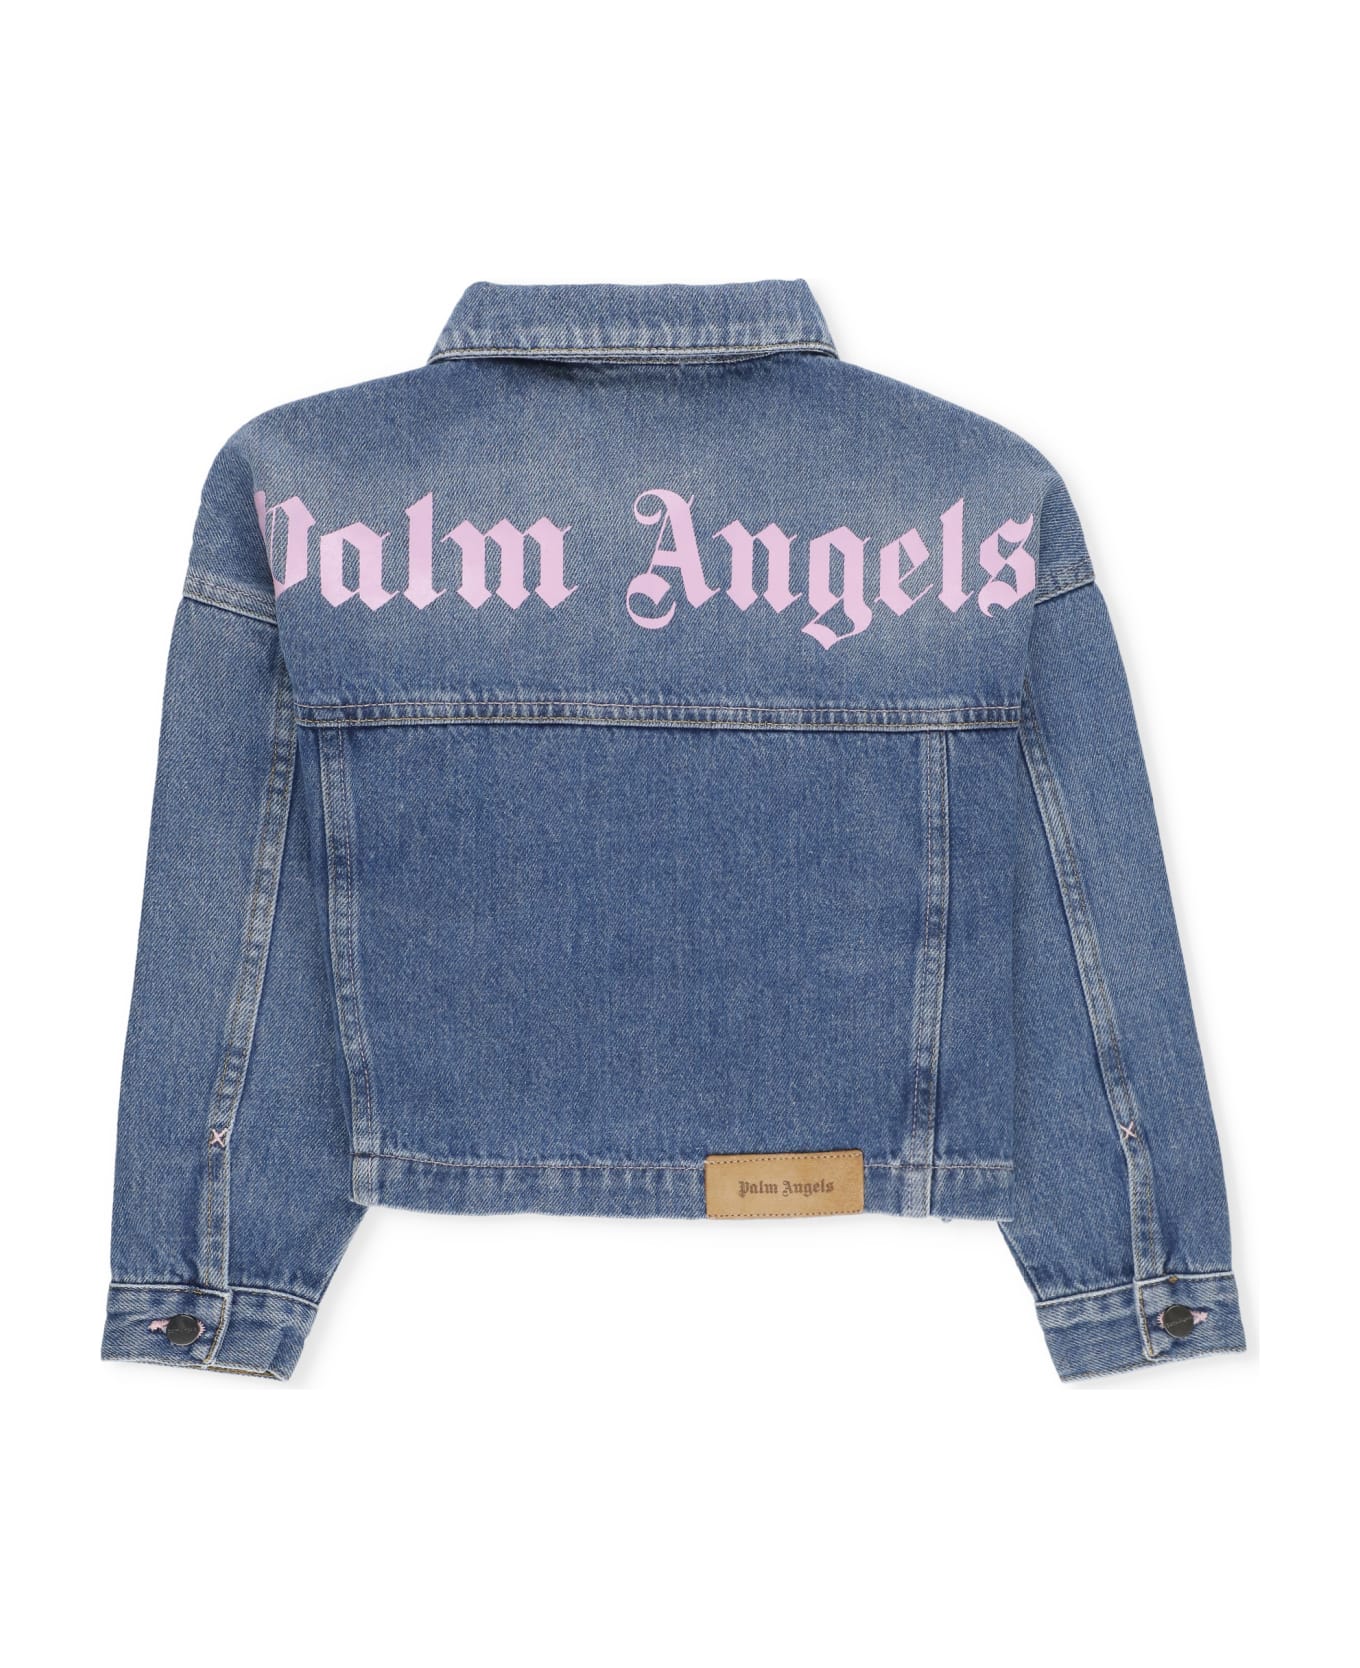 Palm Angels Cottone Jeans Jacket - Blue